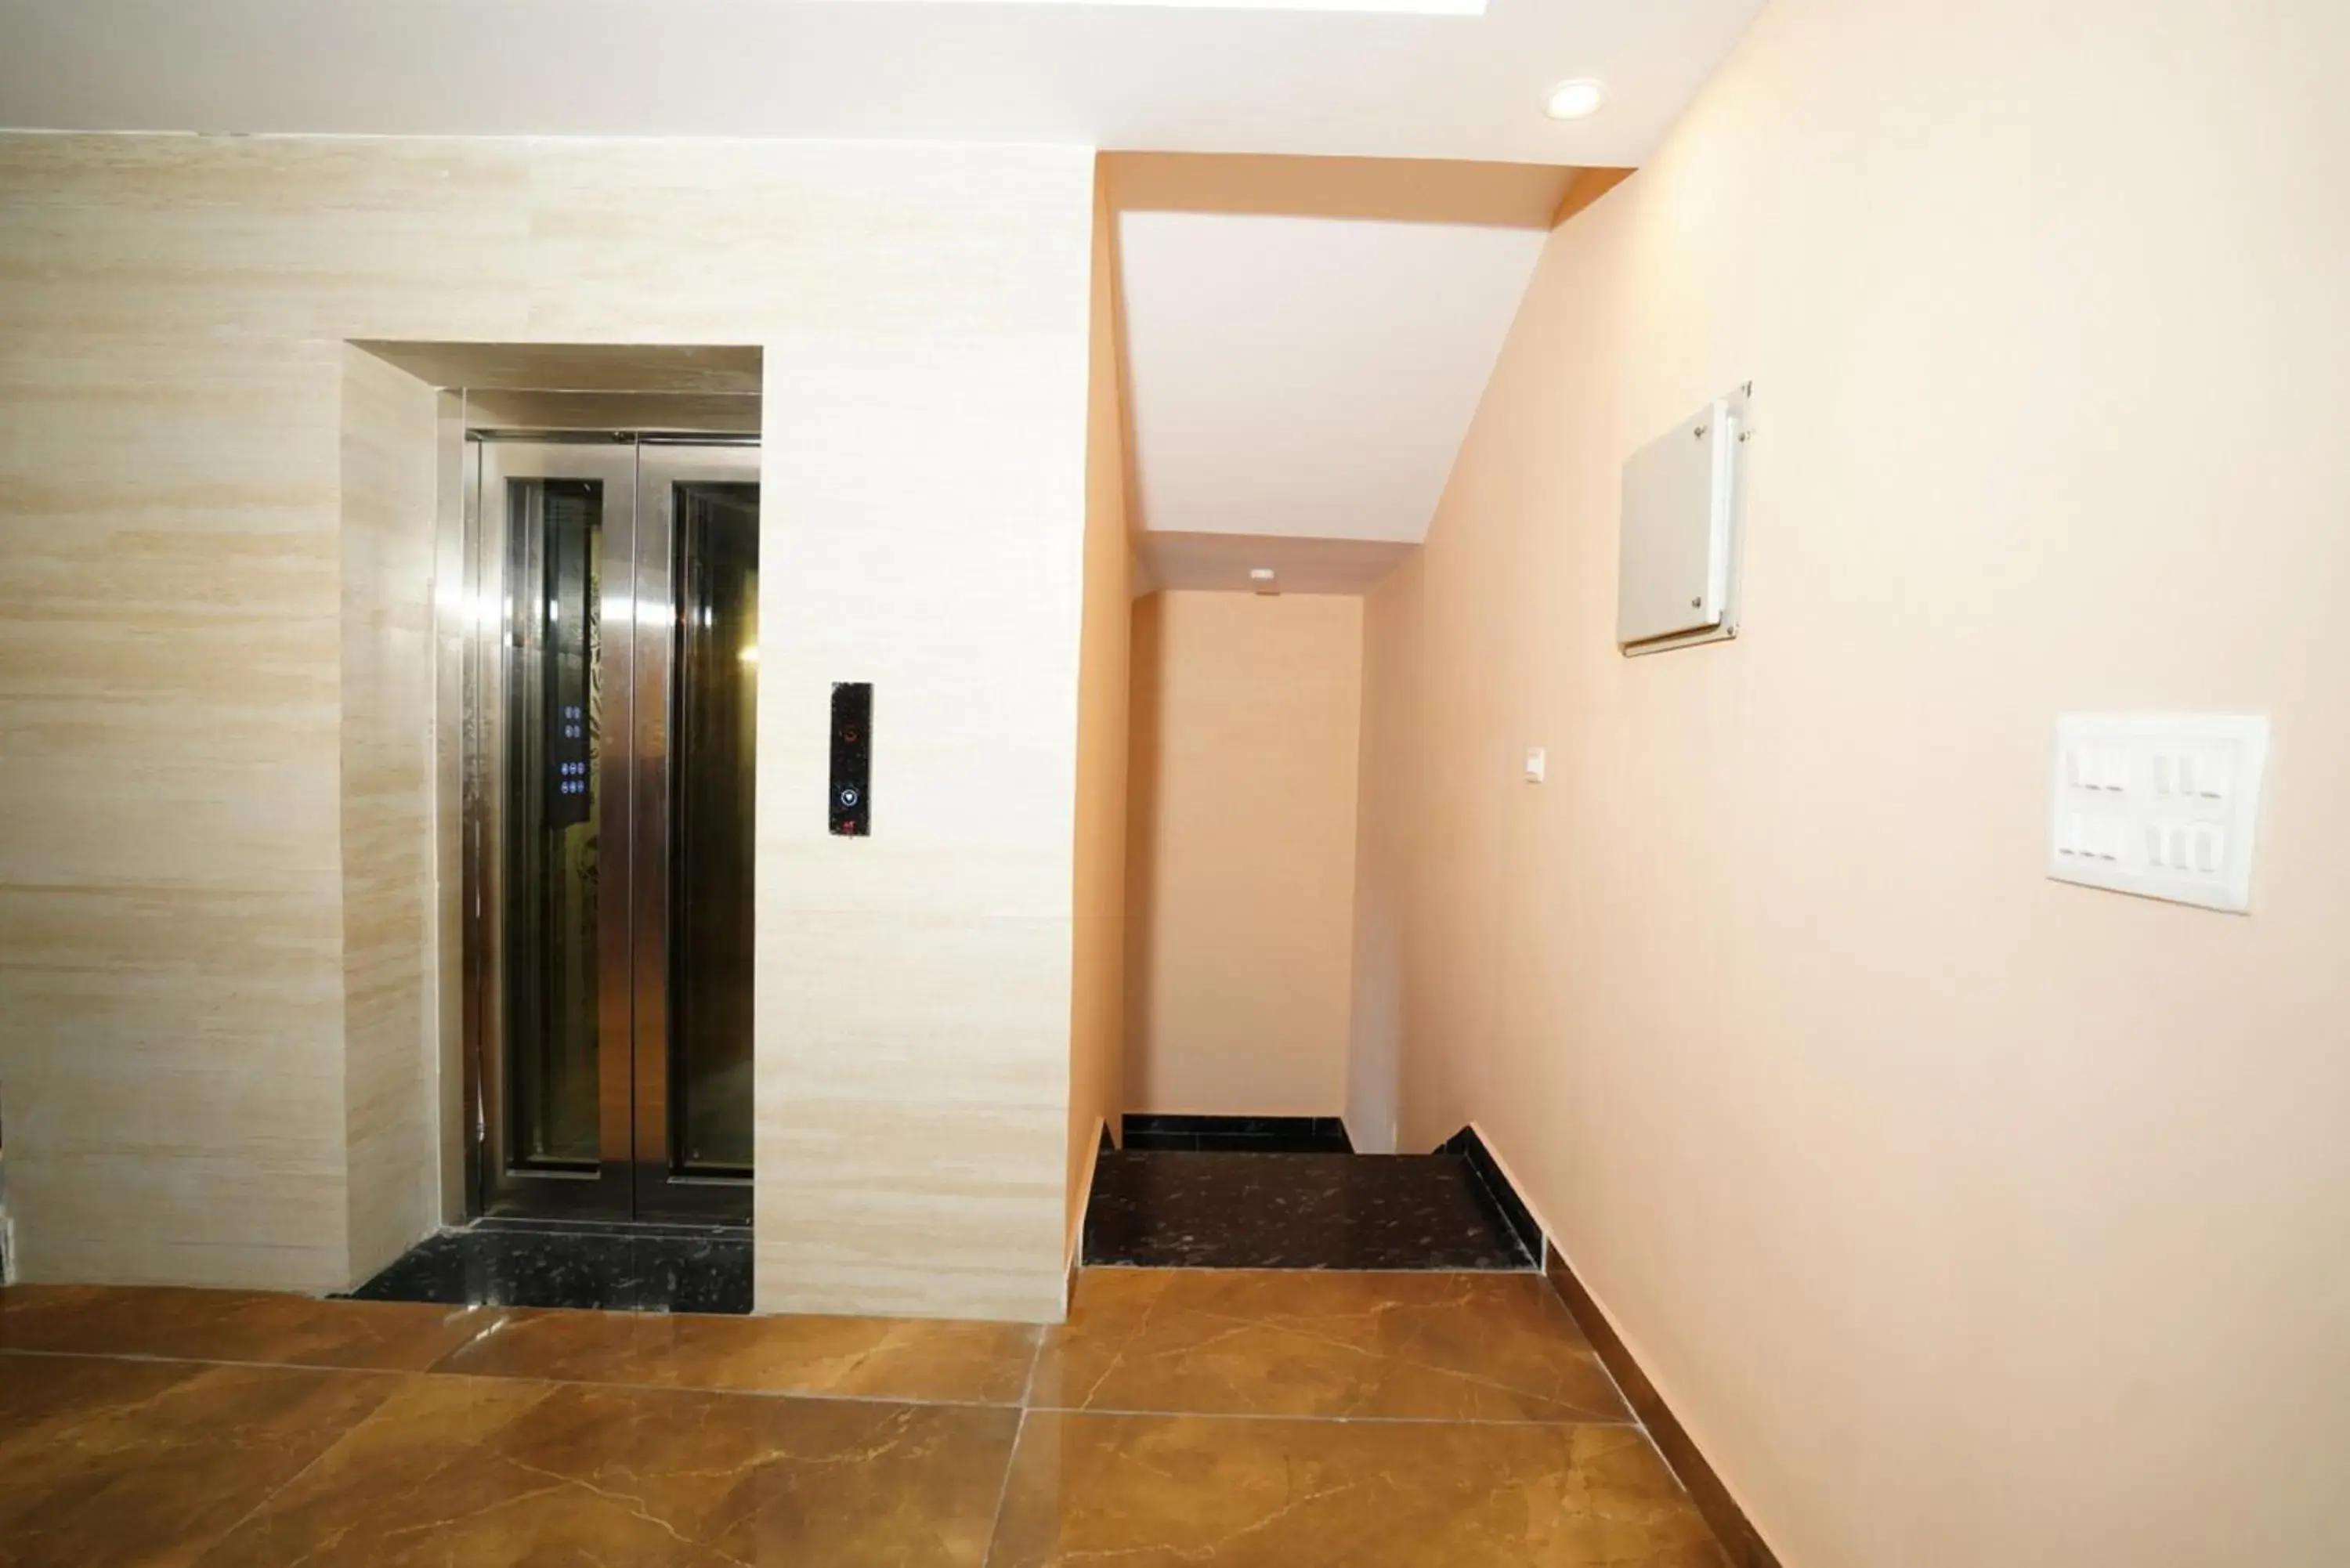 Lobby or reception, Bathroom in ExpoMart Inn